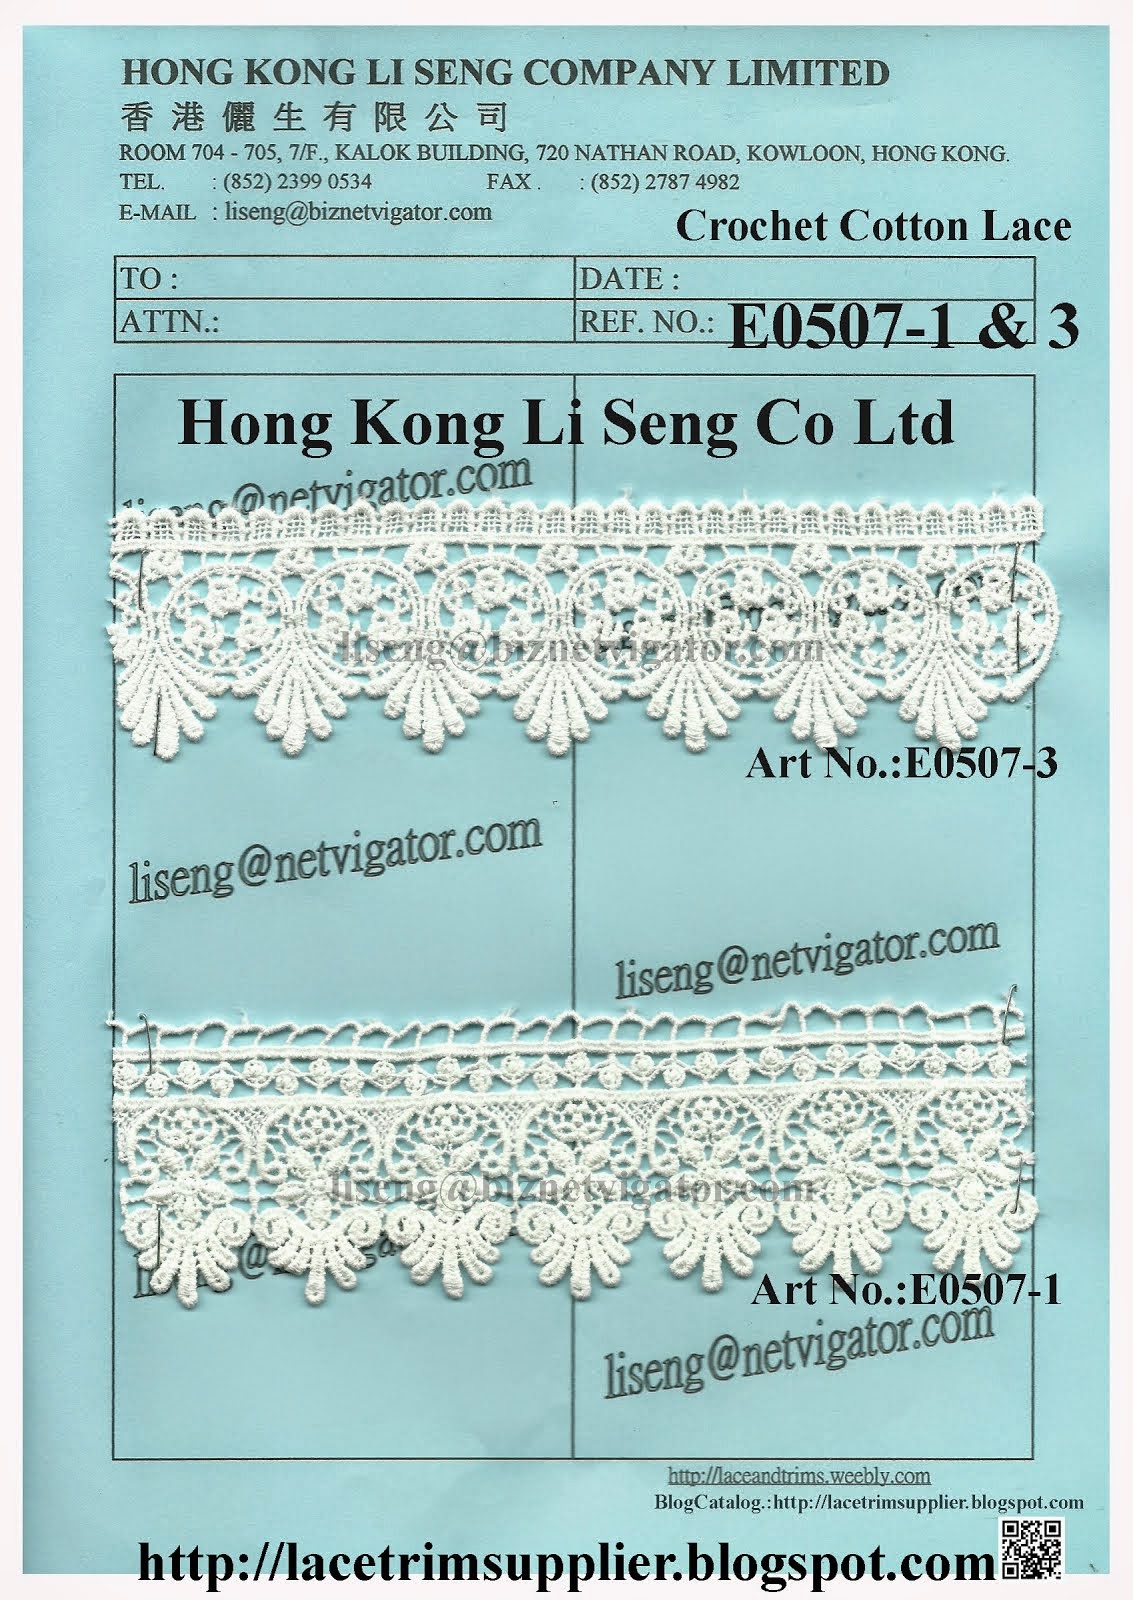 Crochet Cotton Lace Manufacturer and Supplier - Hong Kong Li Seng Co Ltd